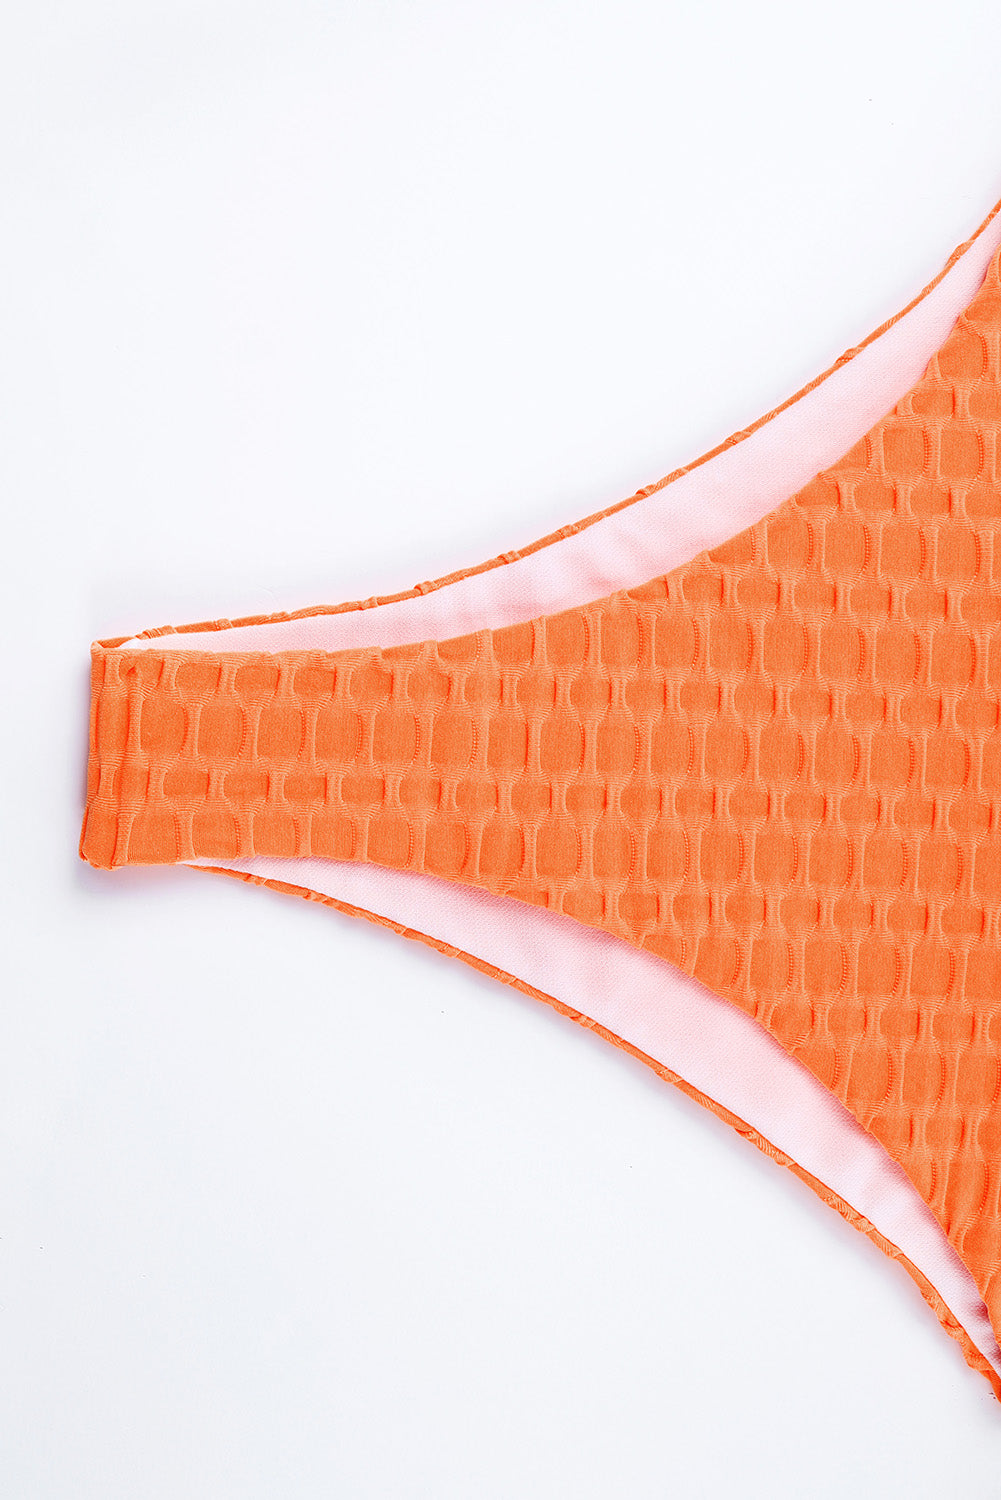 Oranžne bikini hlače s teksturiranim medenim glavnikom